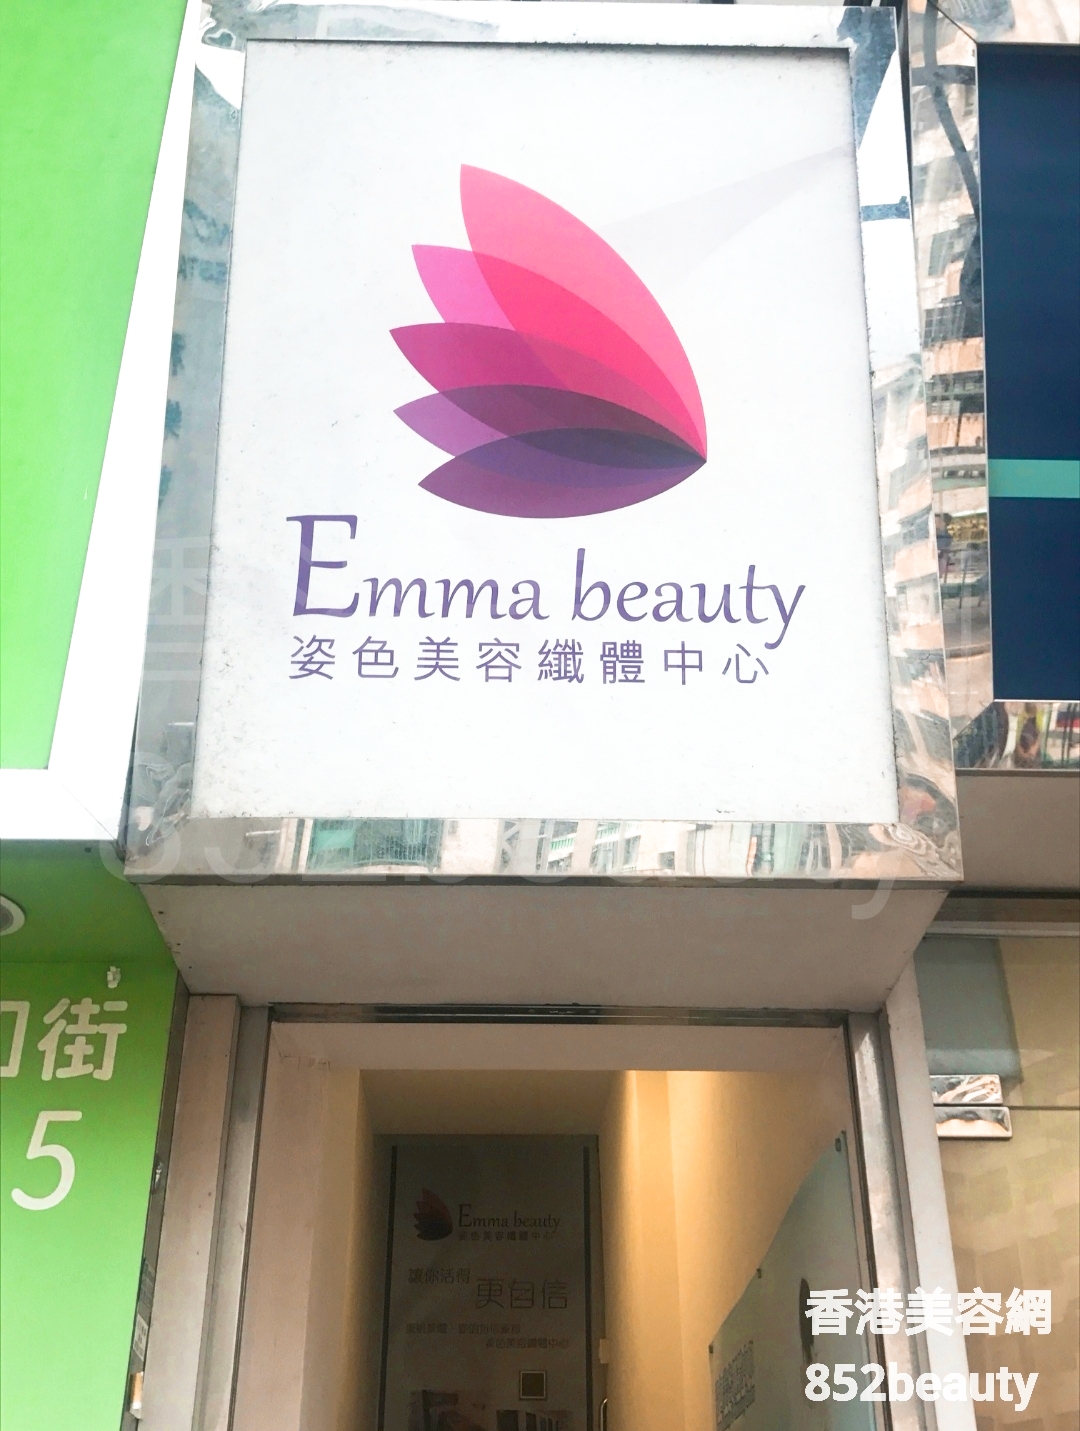 香港美容網 Hong Kong Beauty Salon 美容院 / 美容師: Emma Beauty 姿色美容纖體中心 (觀塘)